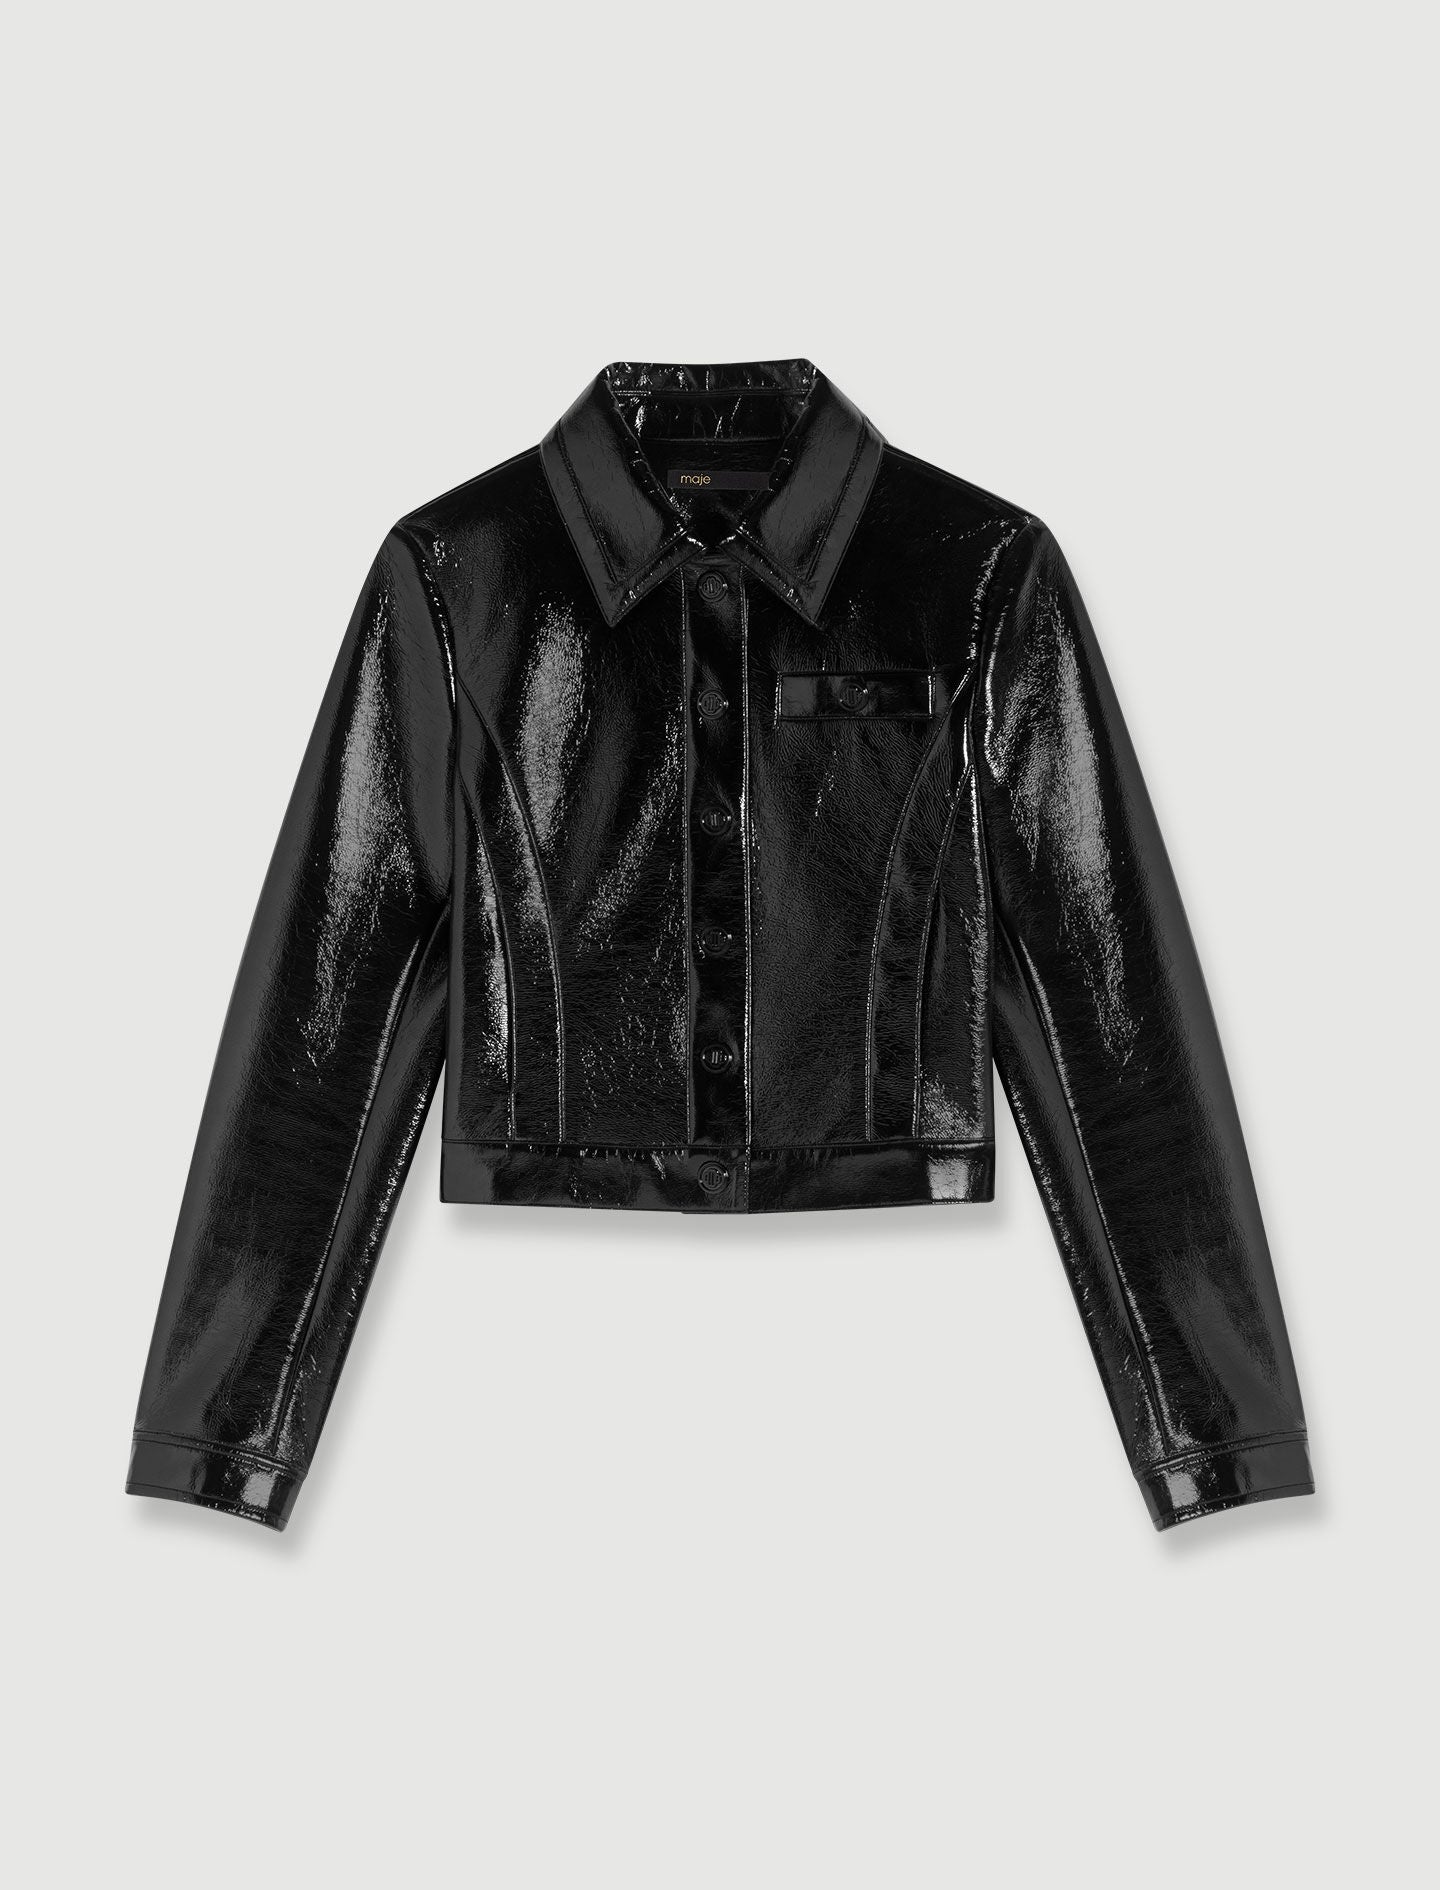 Black-vinyl jacket